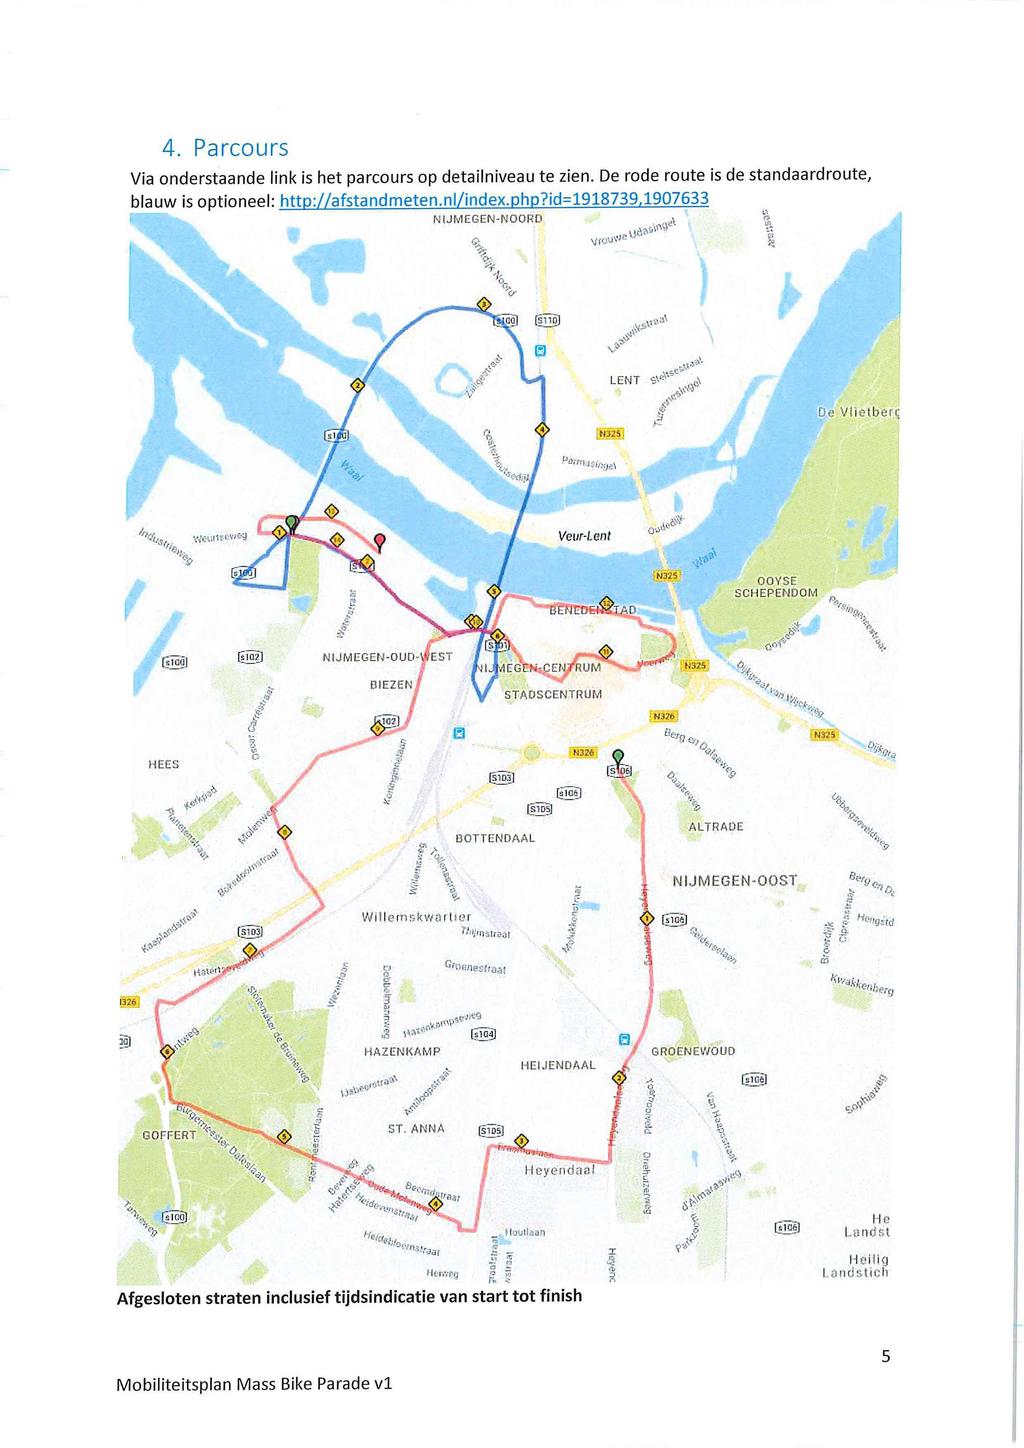 4. Parcours Via onderstaande link is het parcours op detailniveau te zien. De rode route is de standaardroute, blauw is optioneel: http://afstandmeten.nl/index.php?